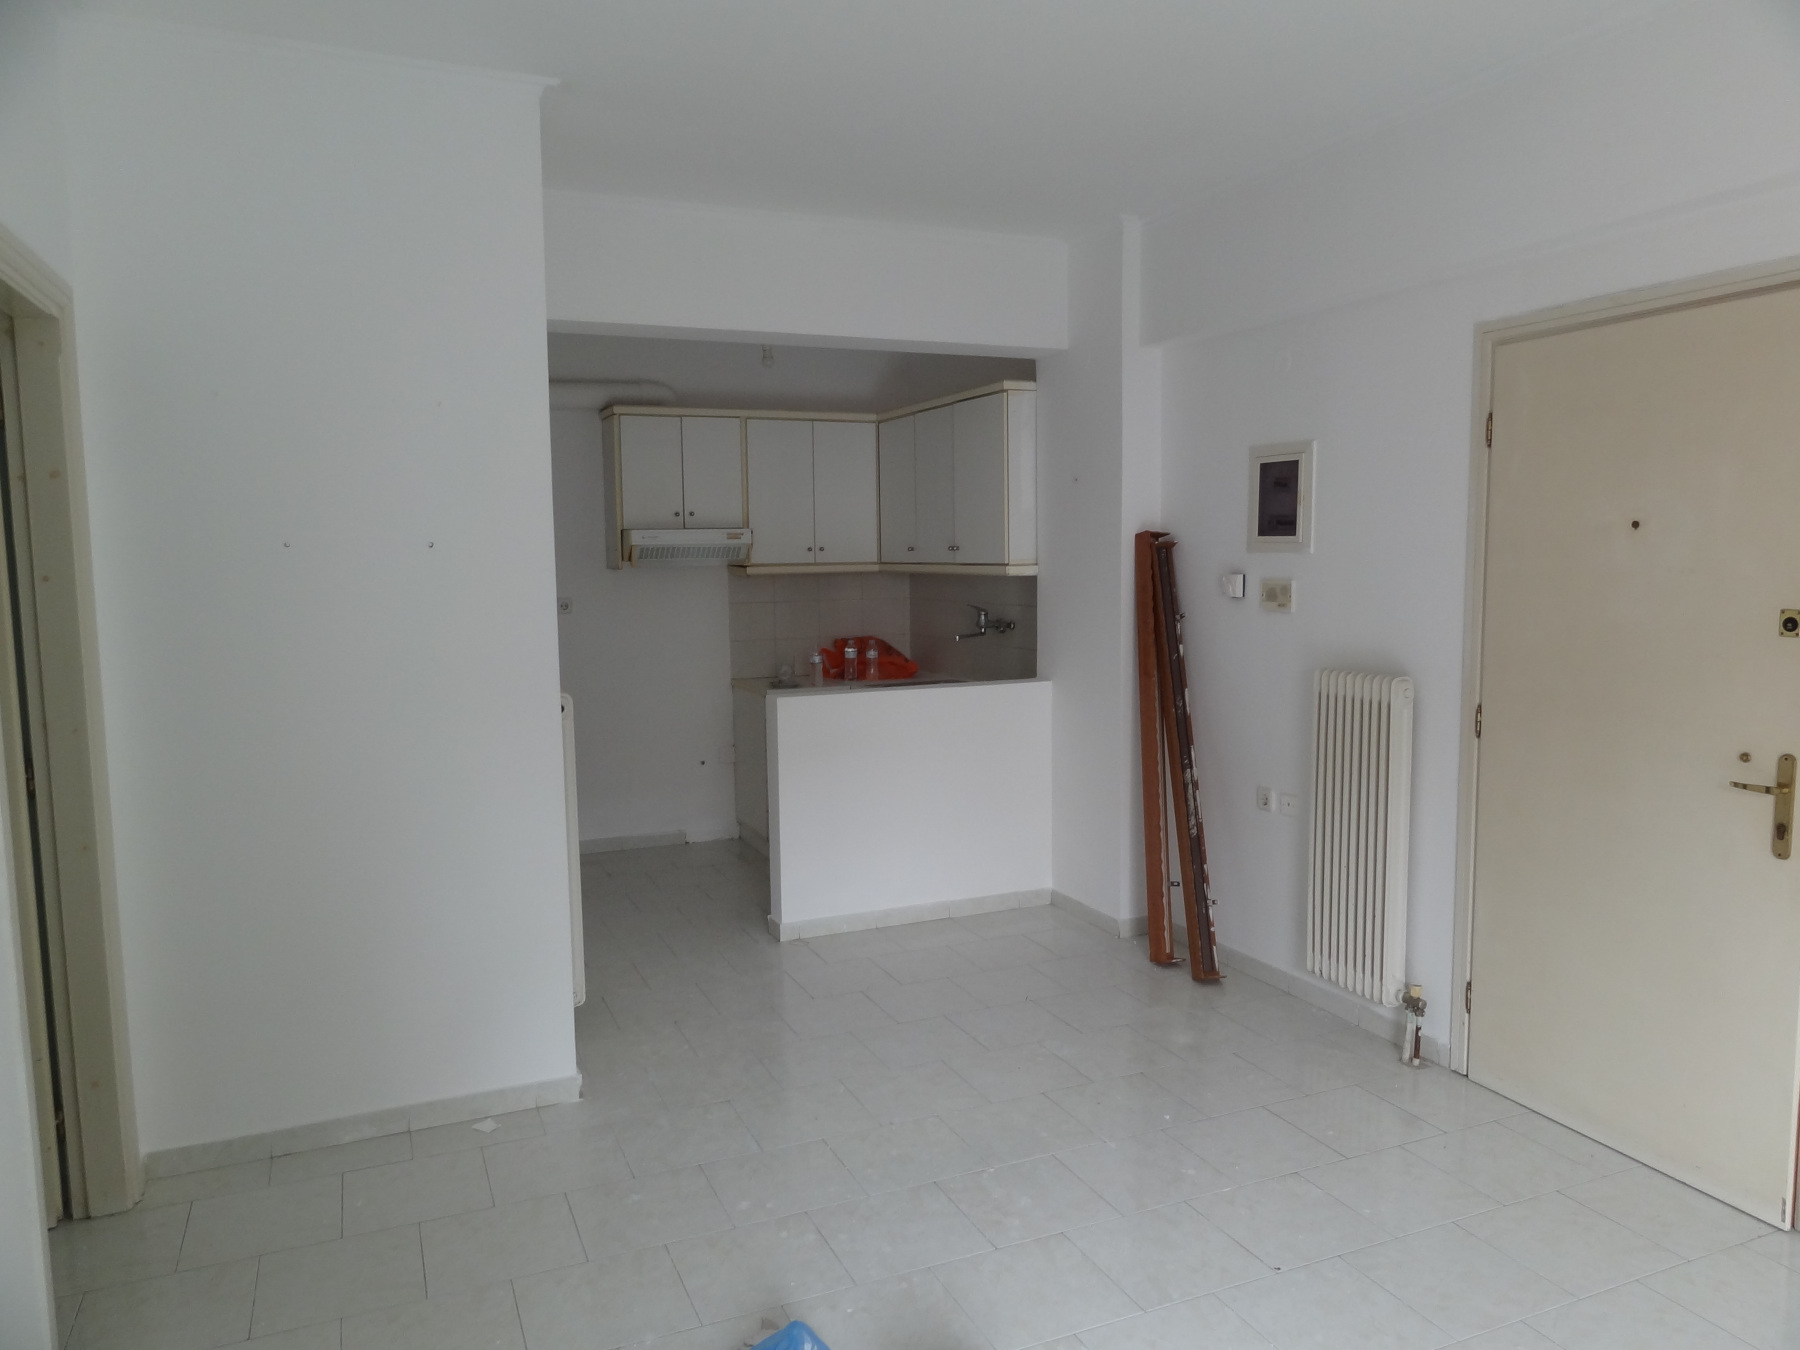 1 bedroom apartment for rent, 50 sq.m. 1st floor in the area of Karavatia in Ioannina